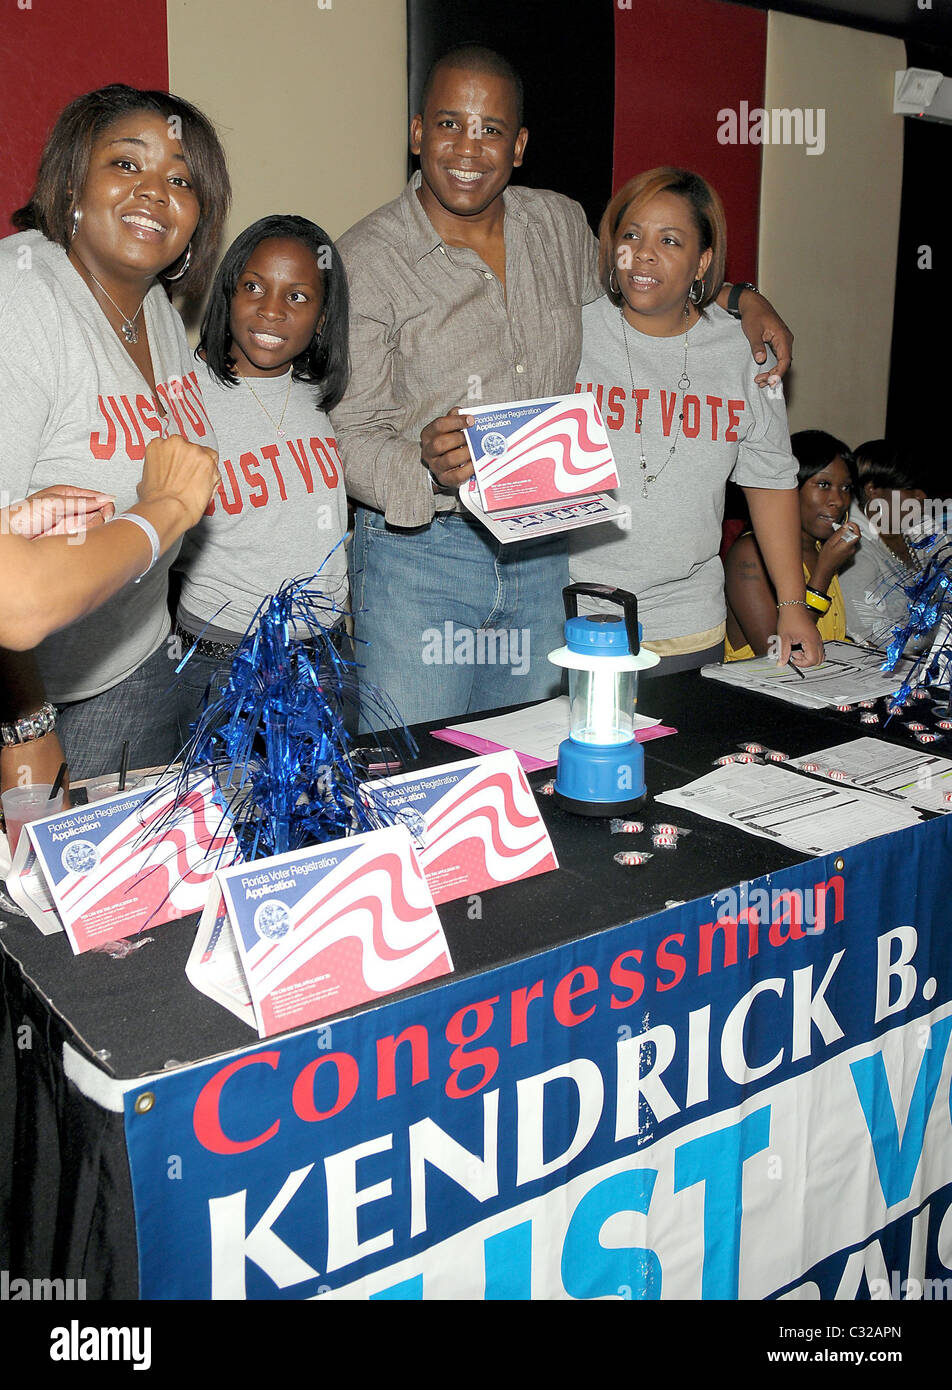 Kendrick B. Meeke a registrazione degli elettori tabella a Flo Rida la celebrazione di compleanno a Cameo nightclub di South Beach Miami, Foto Stock